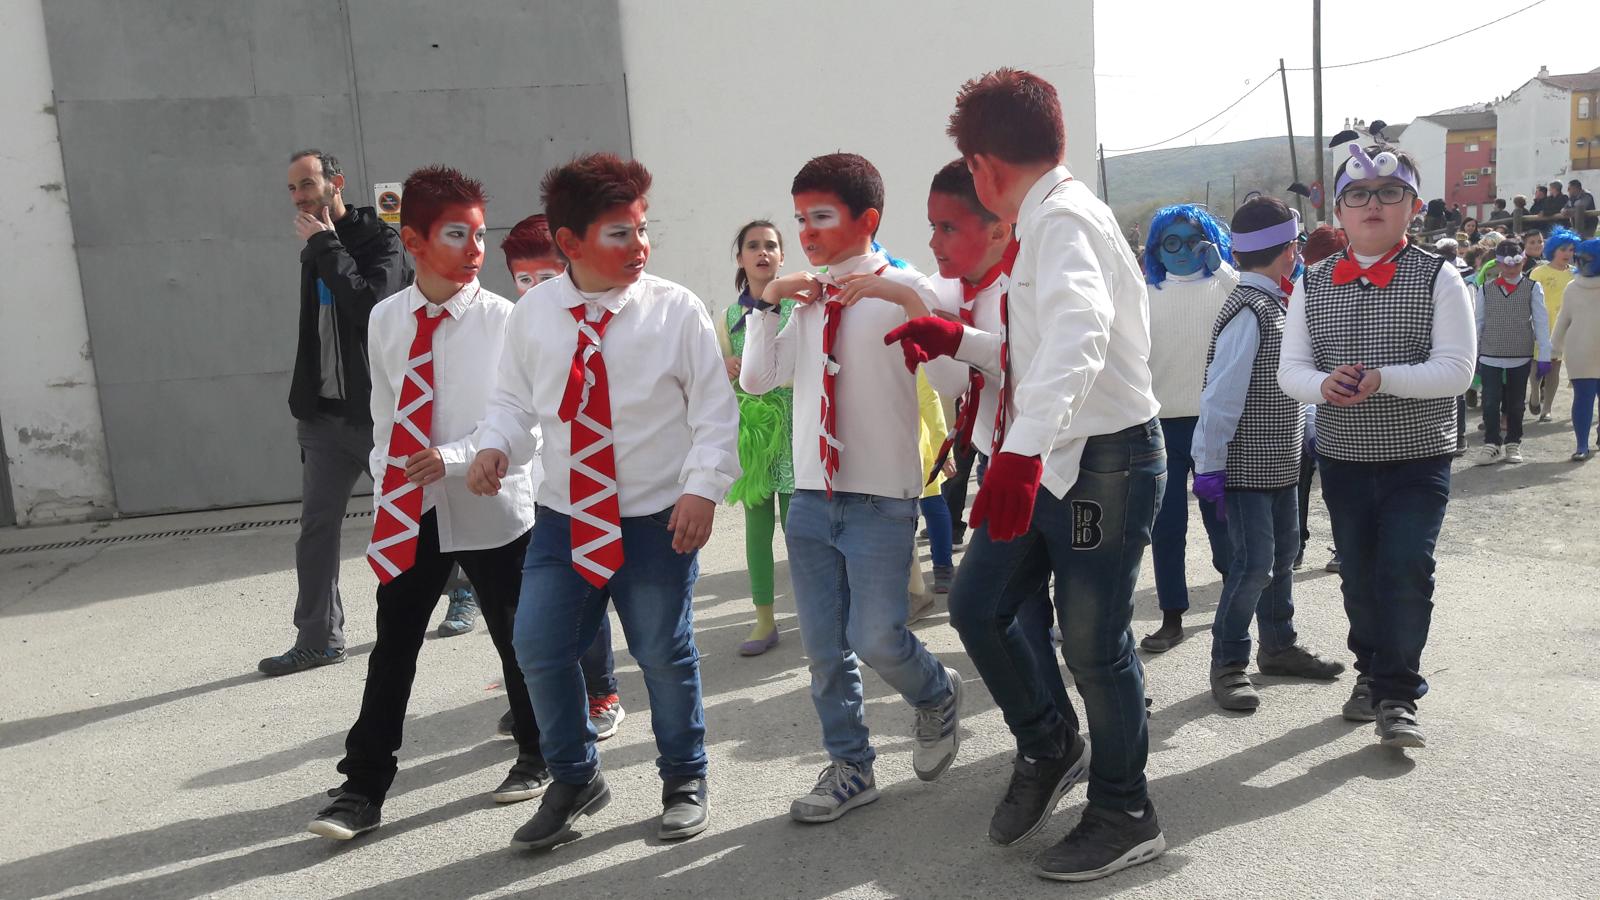 Pasacalles de Carnaval Escolar en Loja